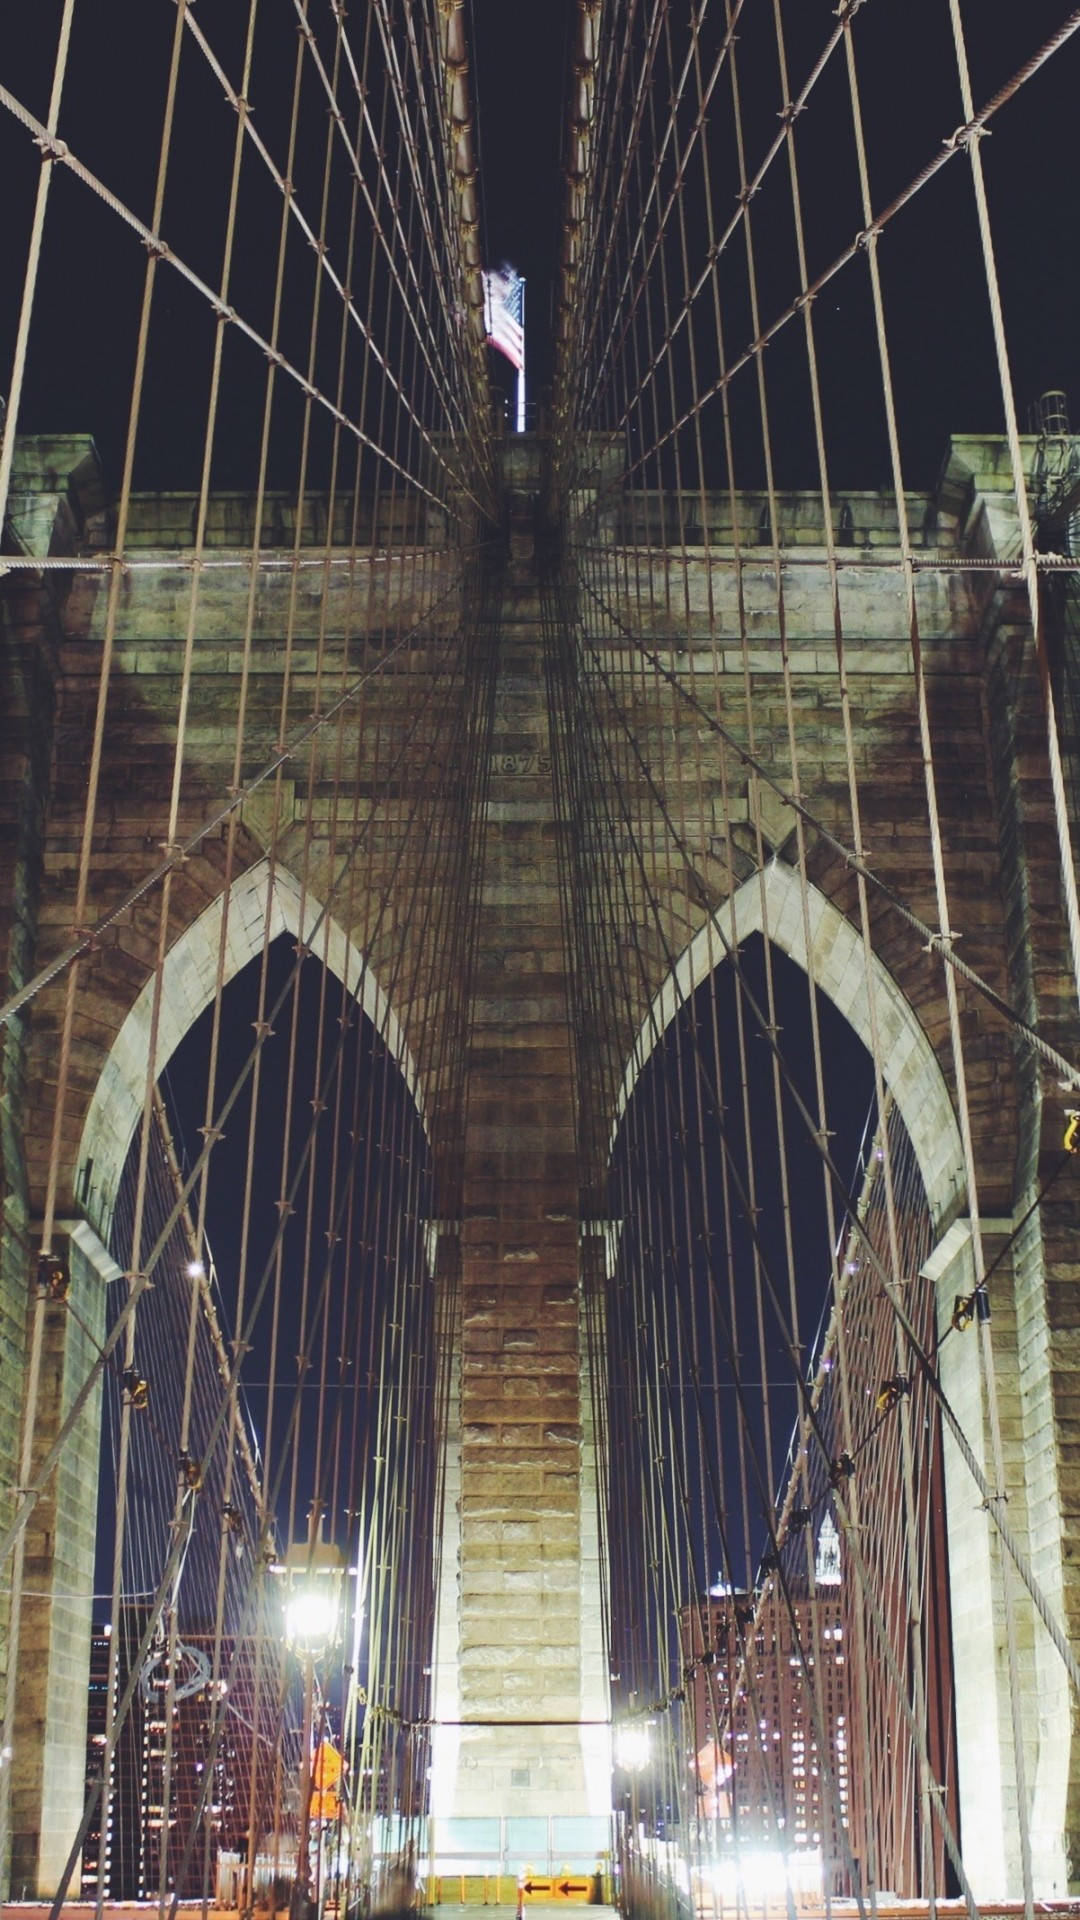 Altadefinizione Di New York Sul Mio Iphone, Ponte Di Brooklyn. Sfondo